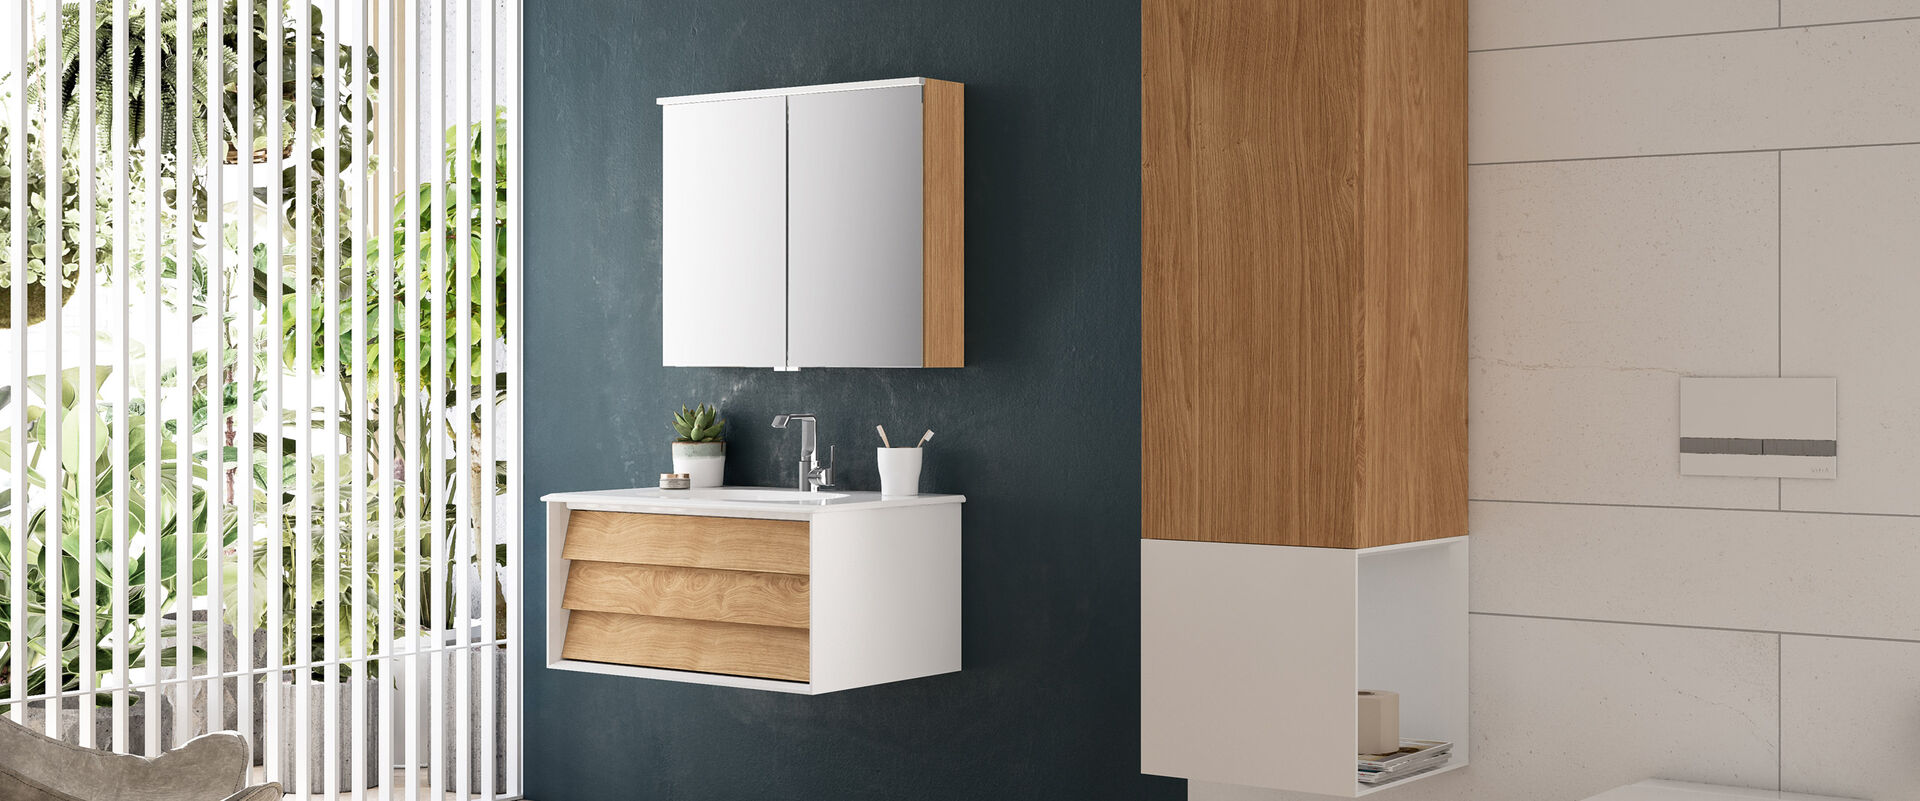 Waschbeckenunterschrank mit lamellenförmigen Schubladen aus Holz. Badmilieu mit Spiegel, Toilette und Hochschrank.